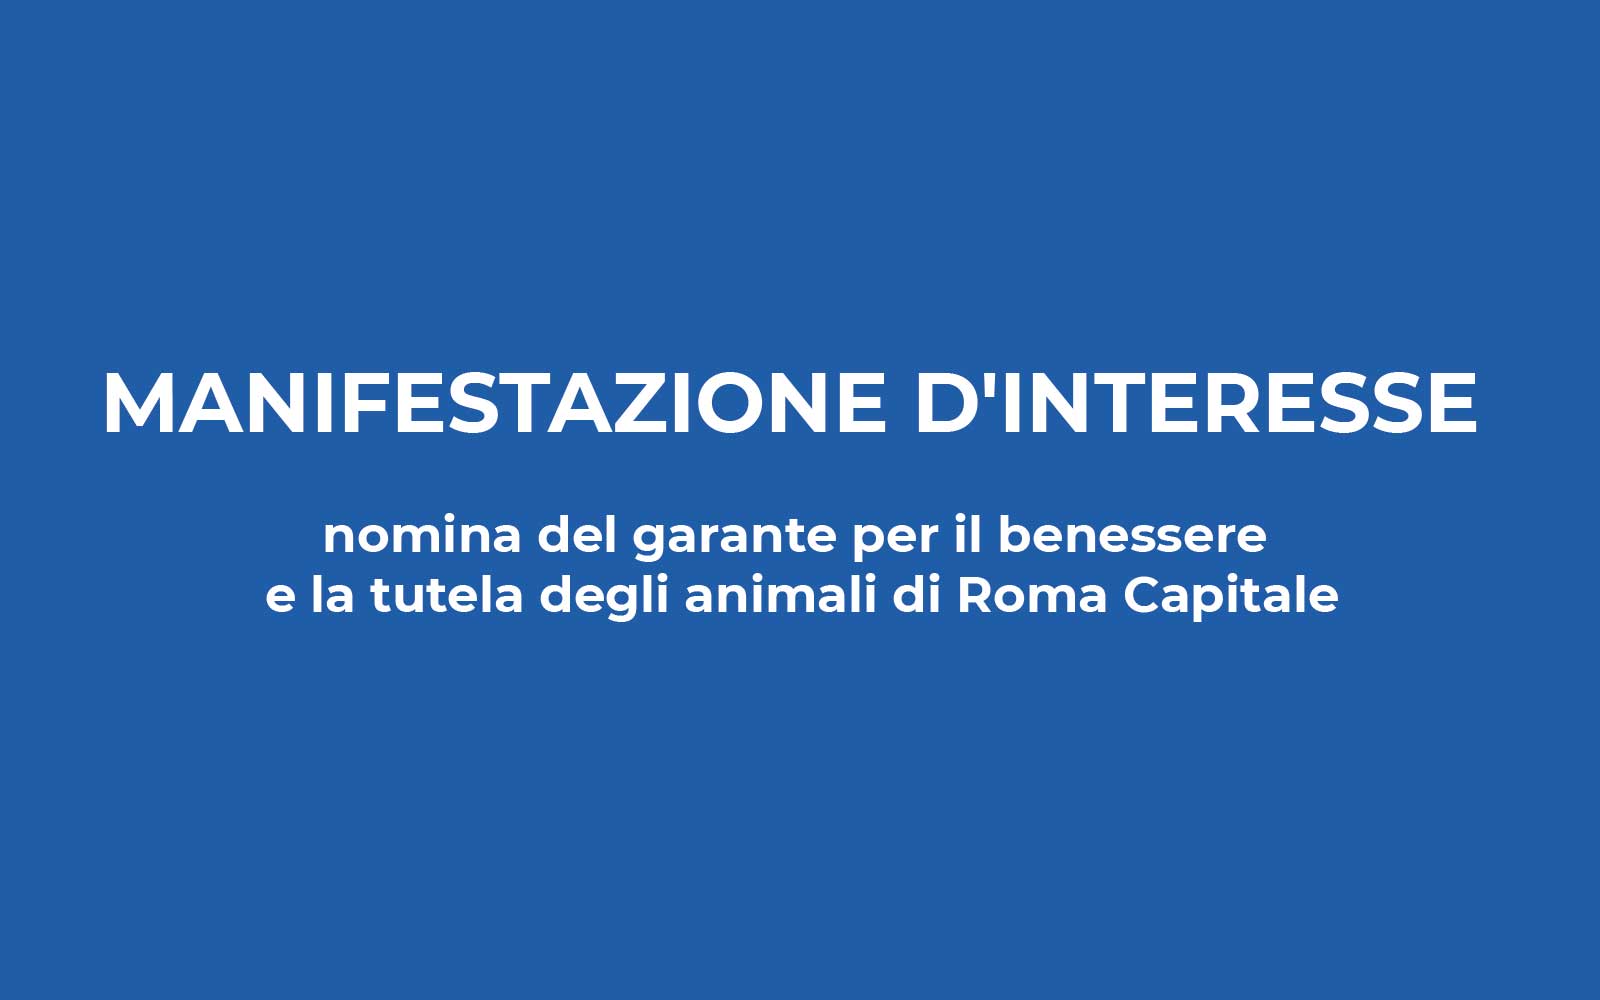 Avviso pubblico per manifestazione d’interesse alla nomina del garante per il benessere e la tutela degli animali di Roma Capitale